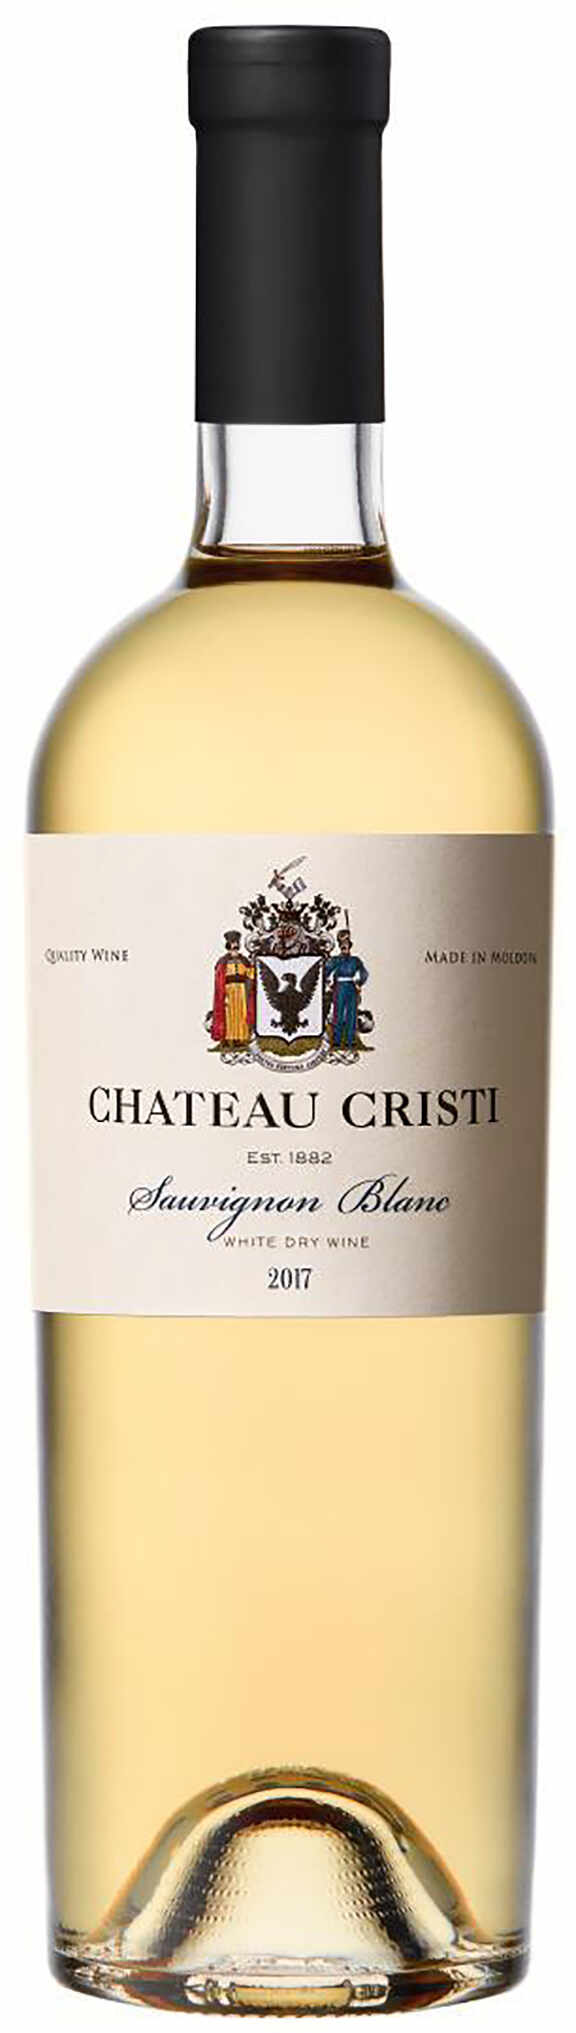 Vin alb - Chateau Cristi, Sauvignon Blanc, sec, 2017 | Chateau Cristi